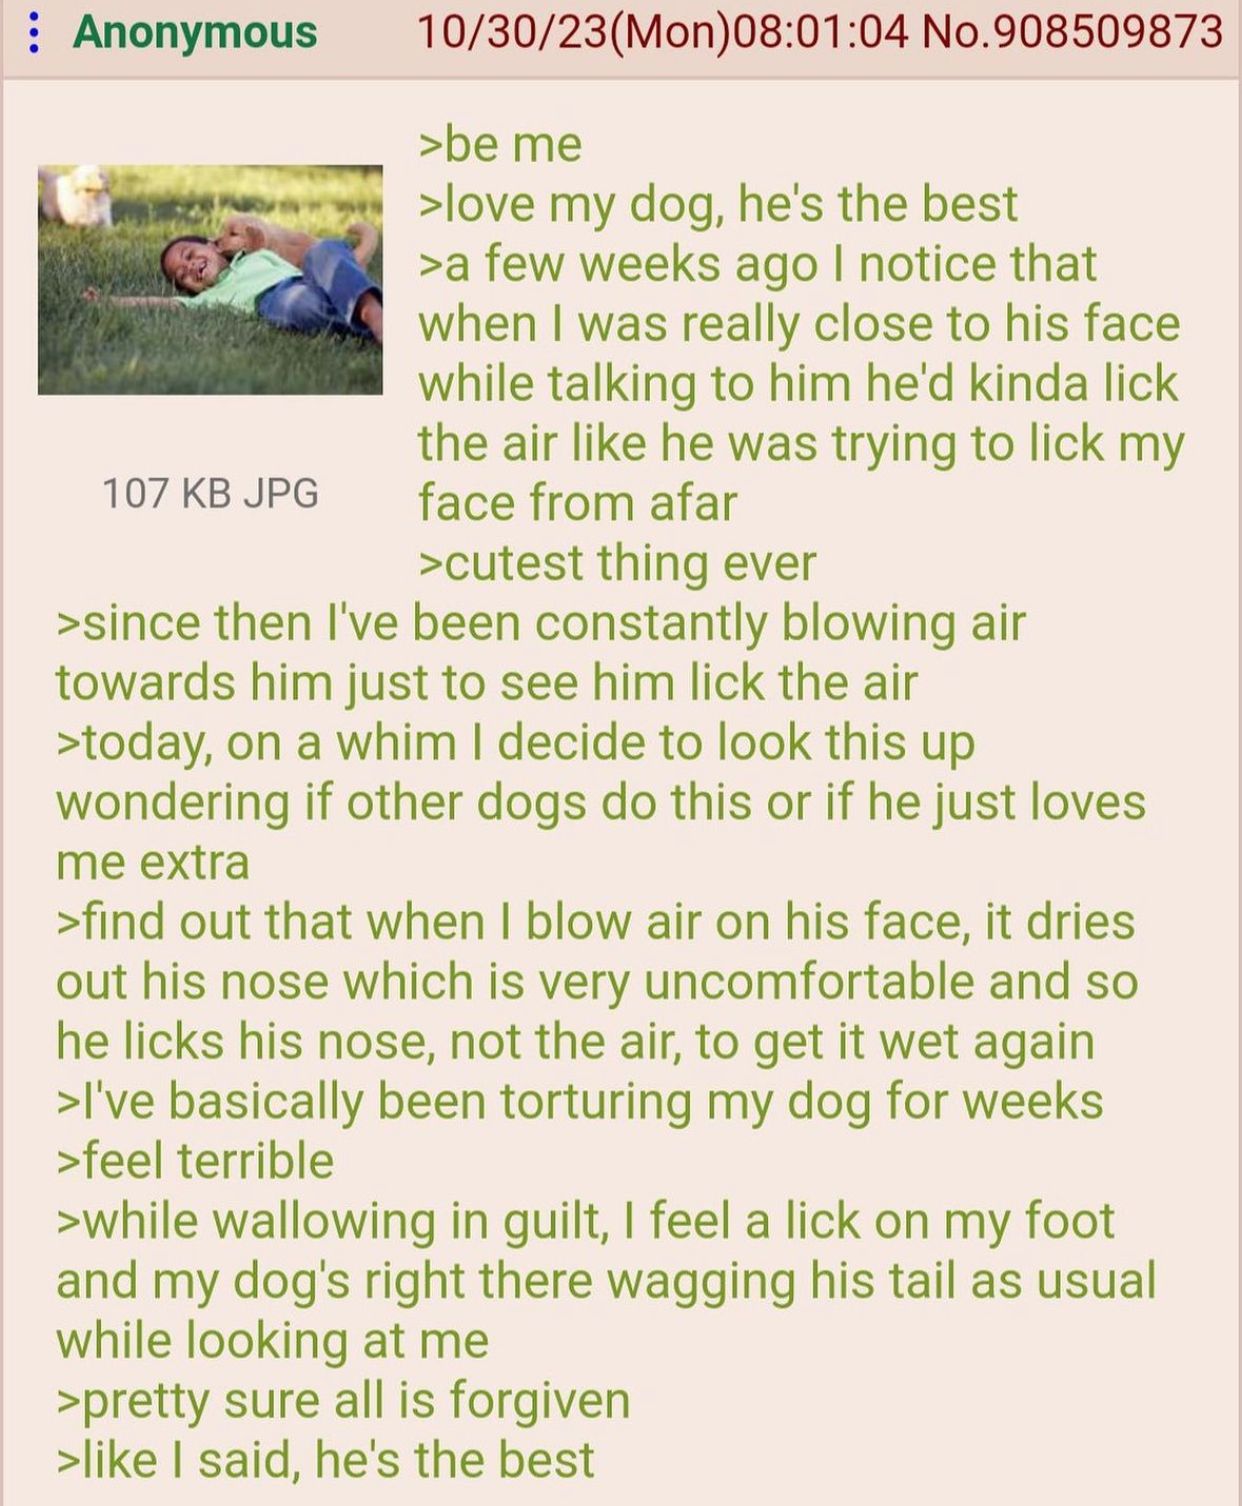 anon has a dog